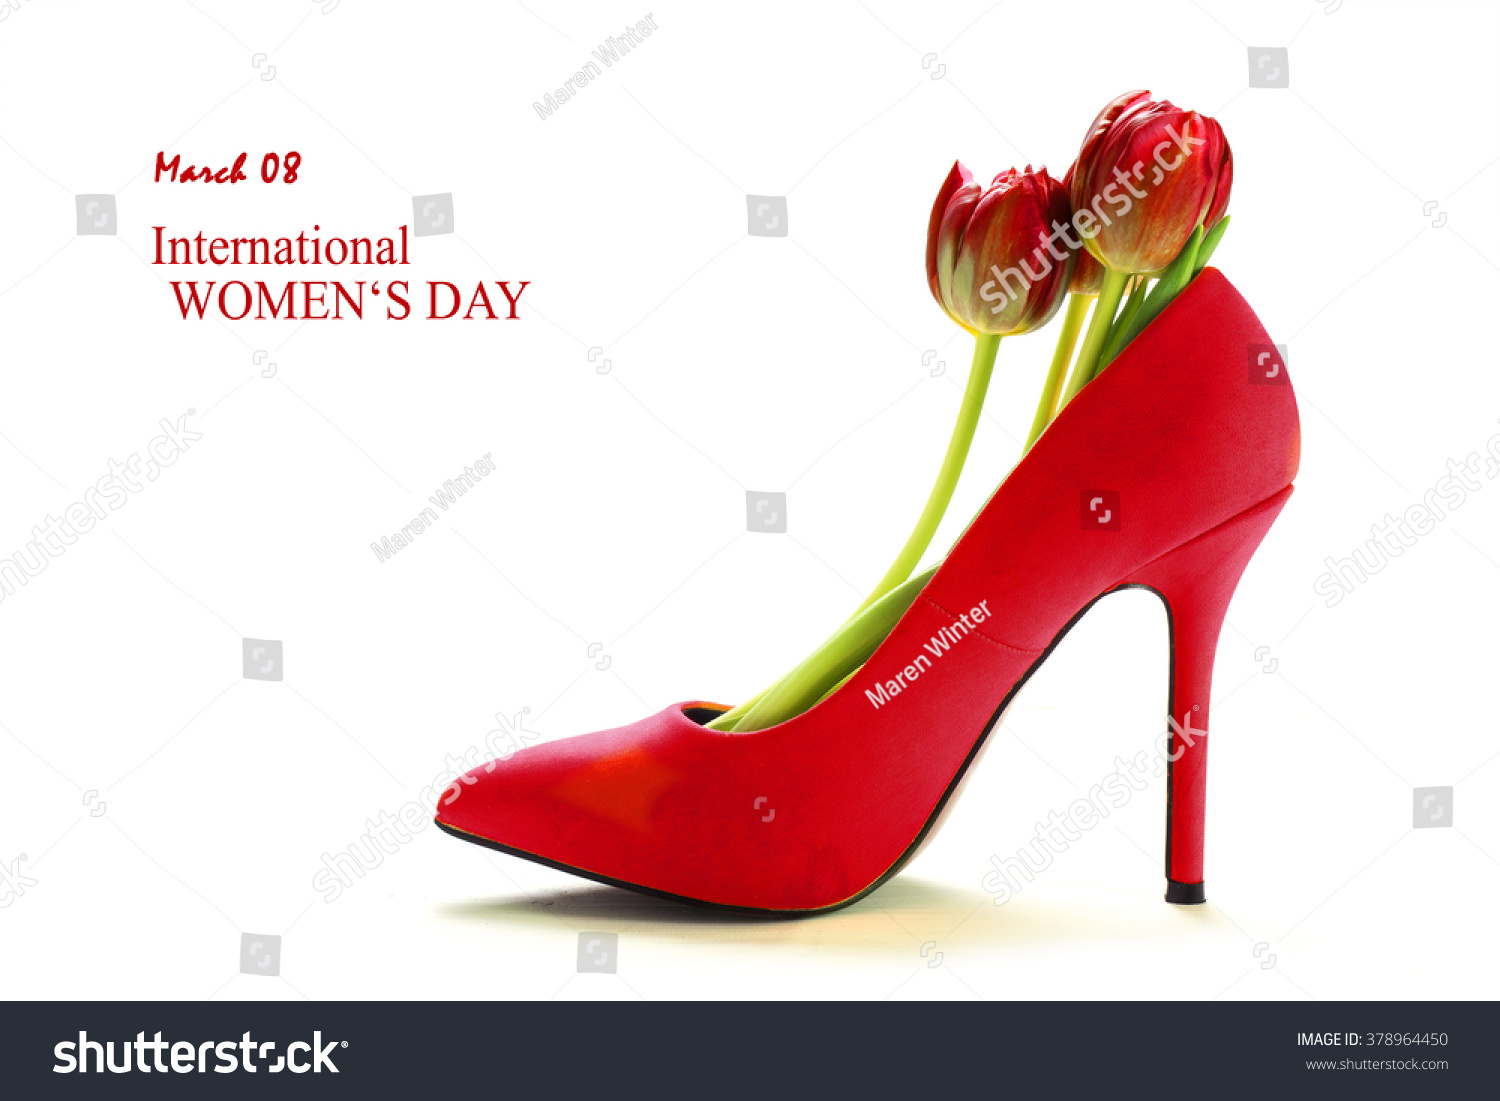 ladies red heeled sandals